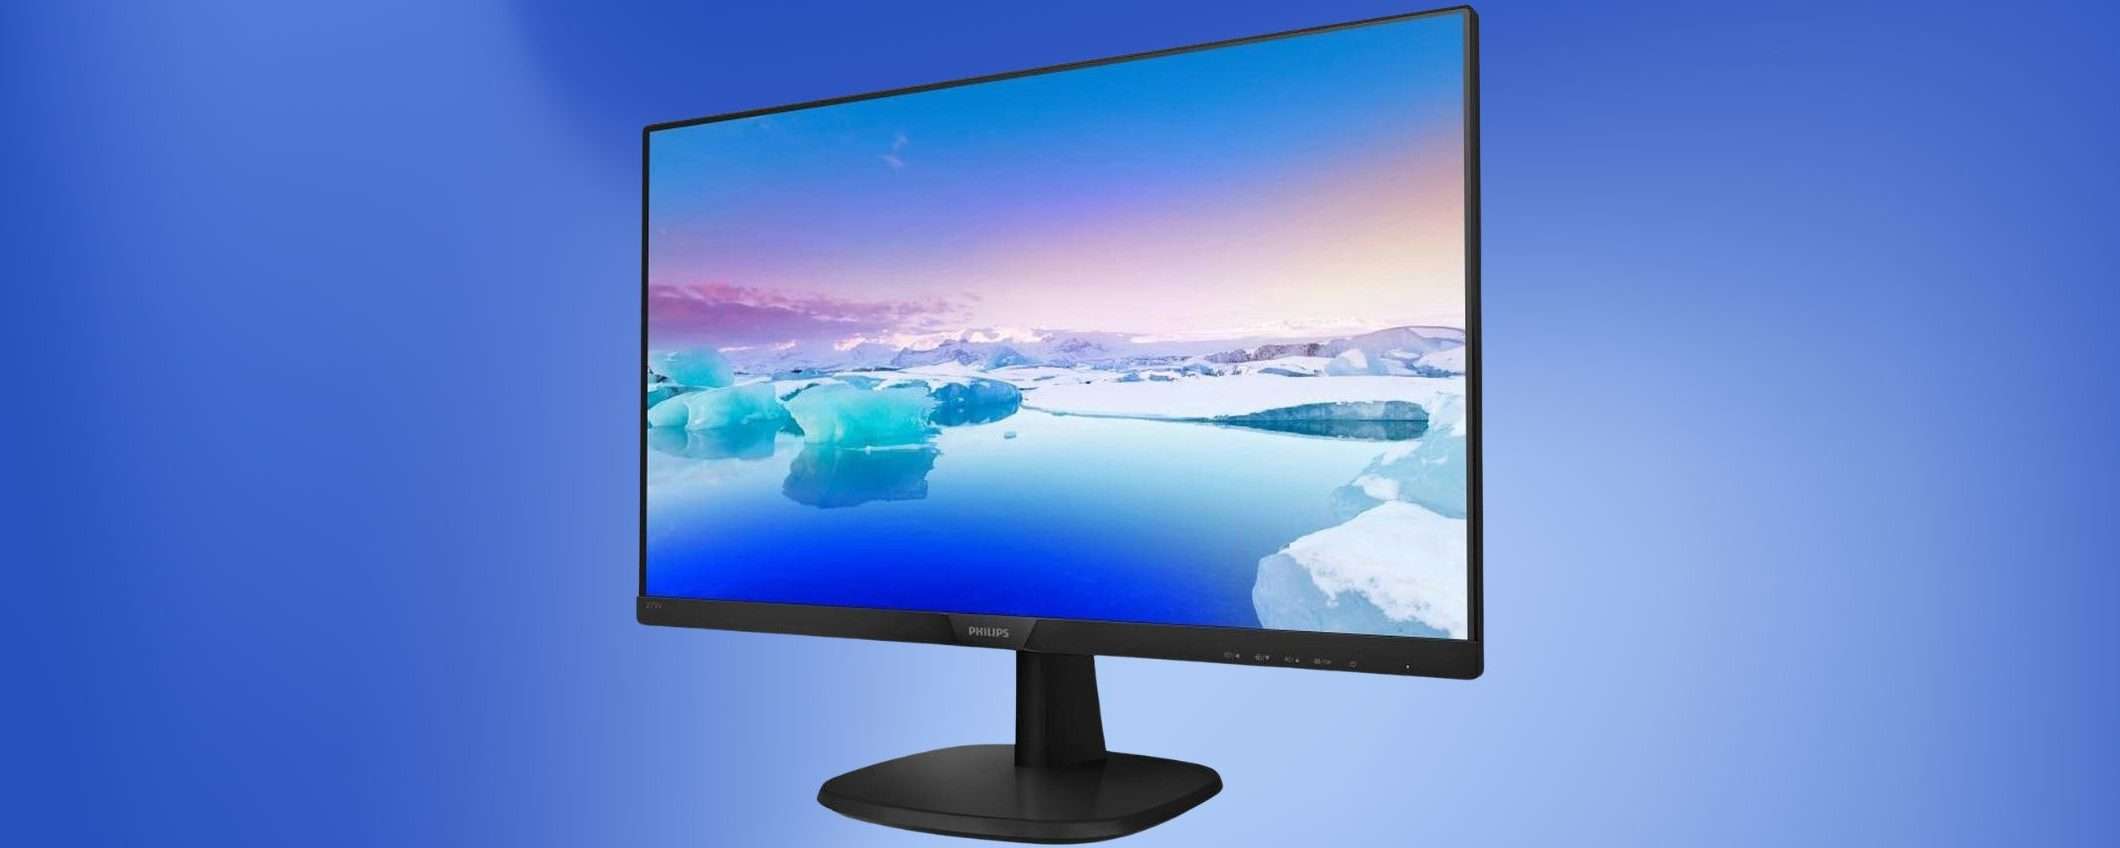 Il prezzo di questo monitor Philips da 27